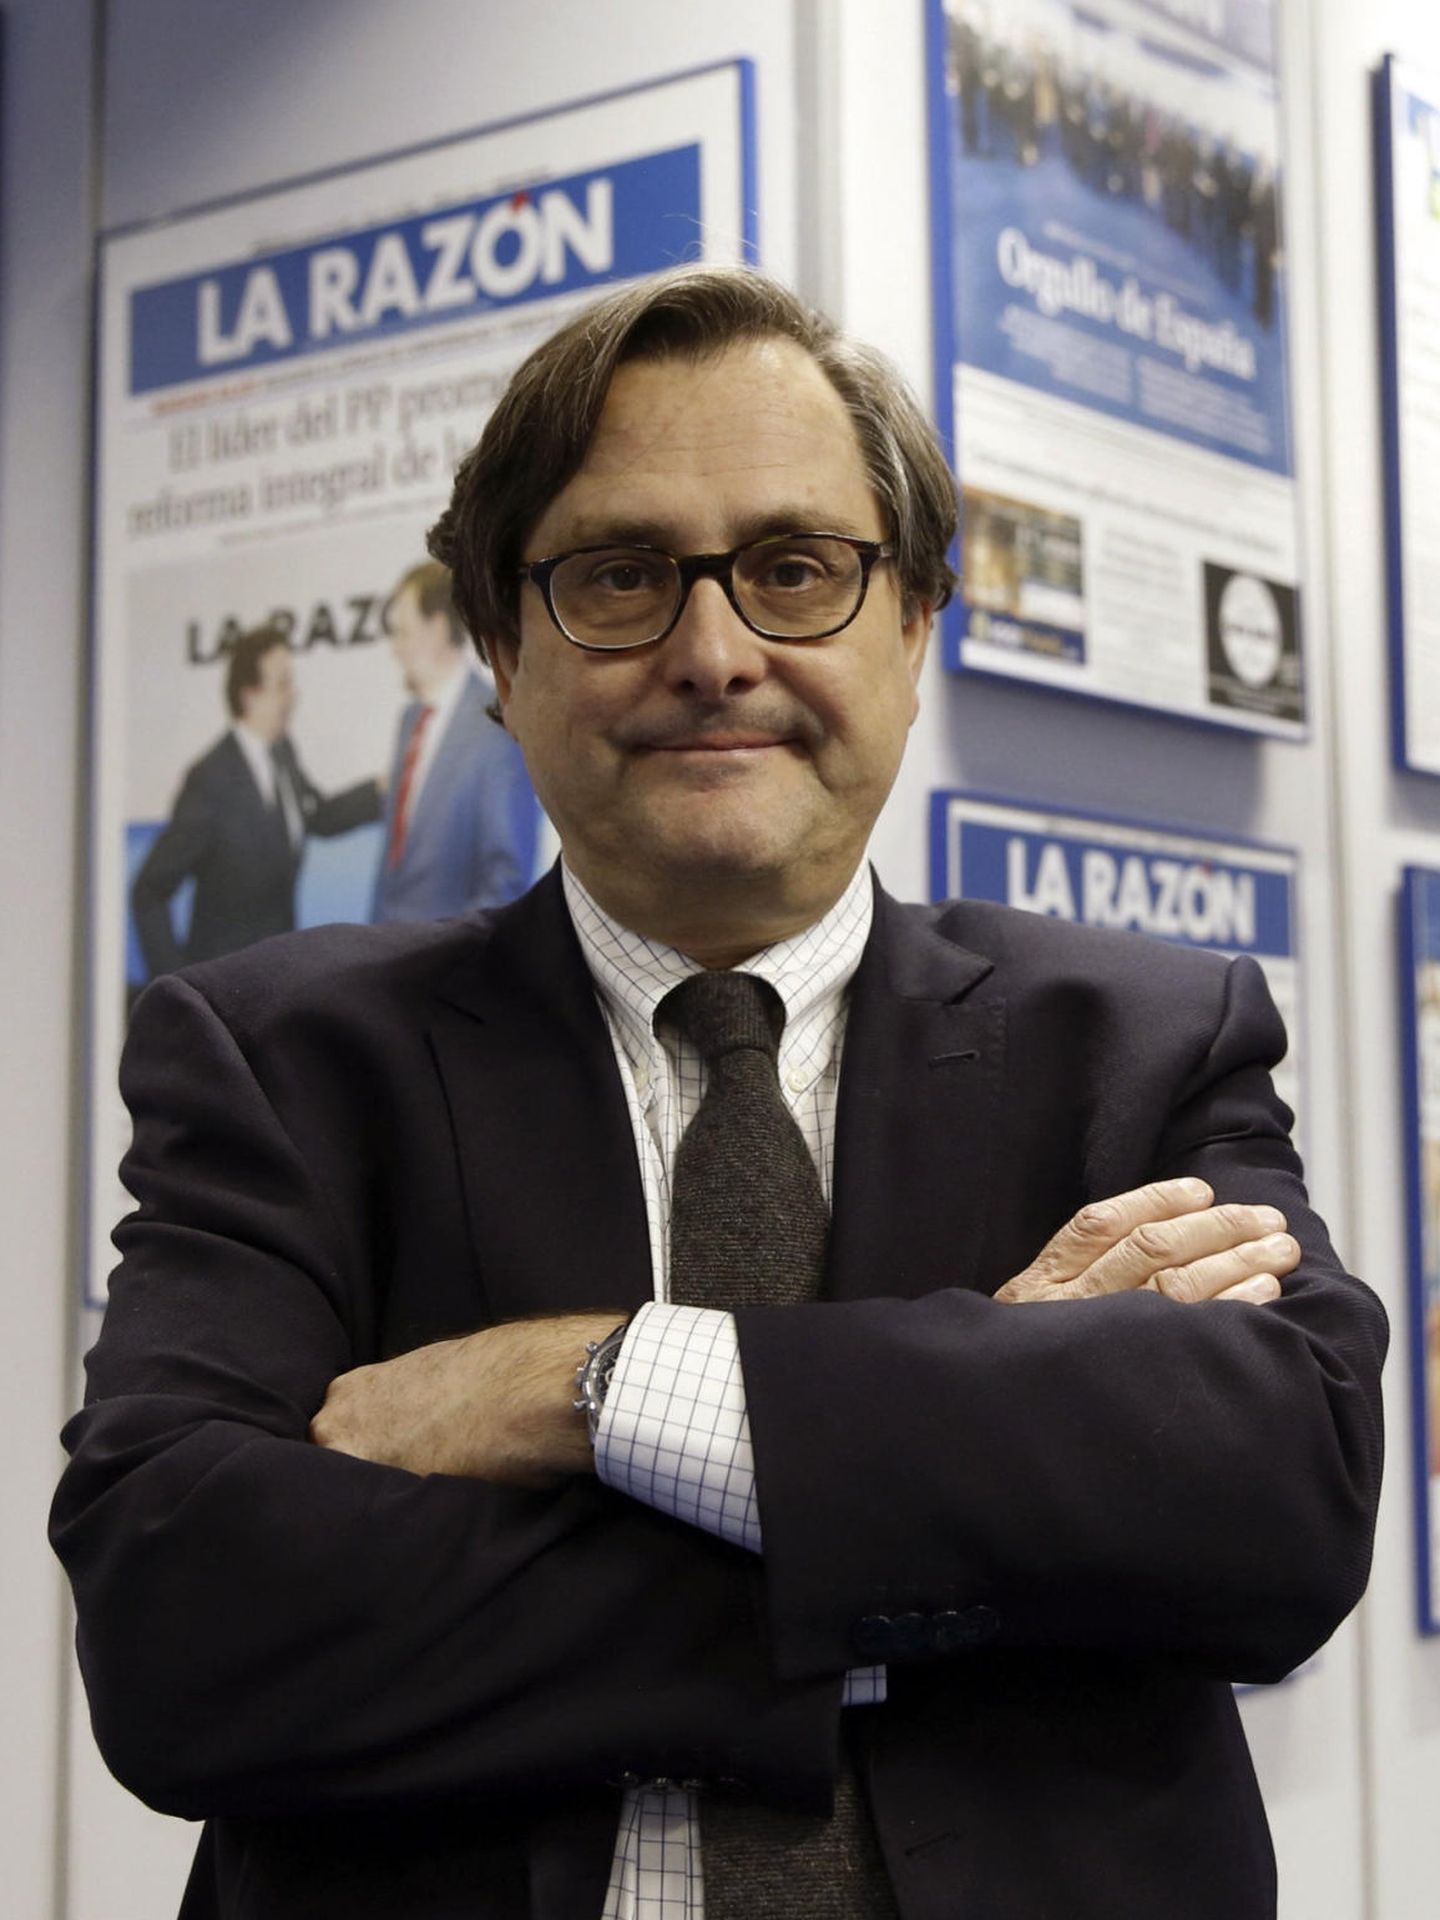 El director del periódico 'La Razón', Francisco Marhuenda (EFE)